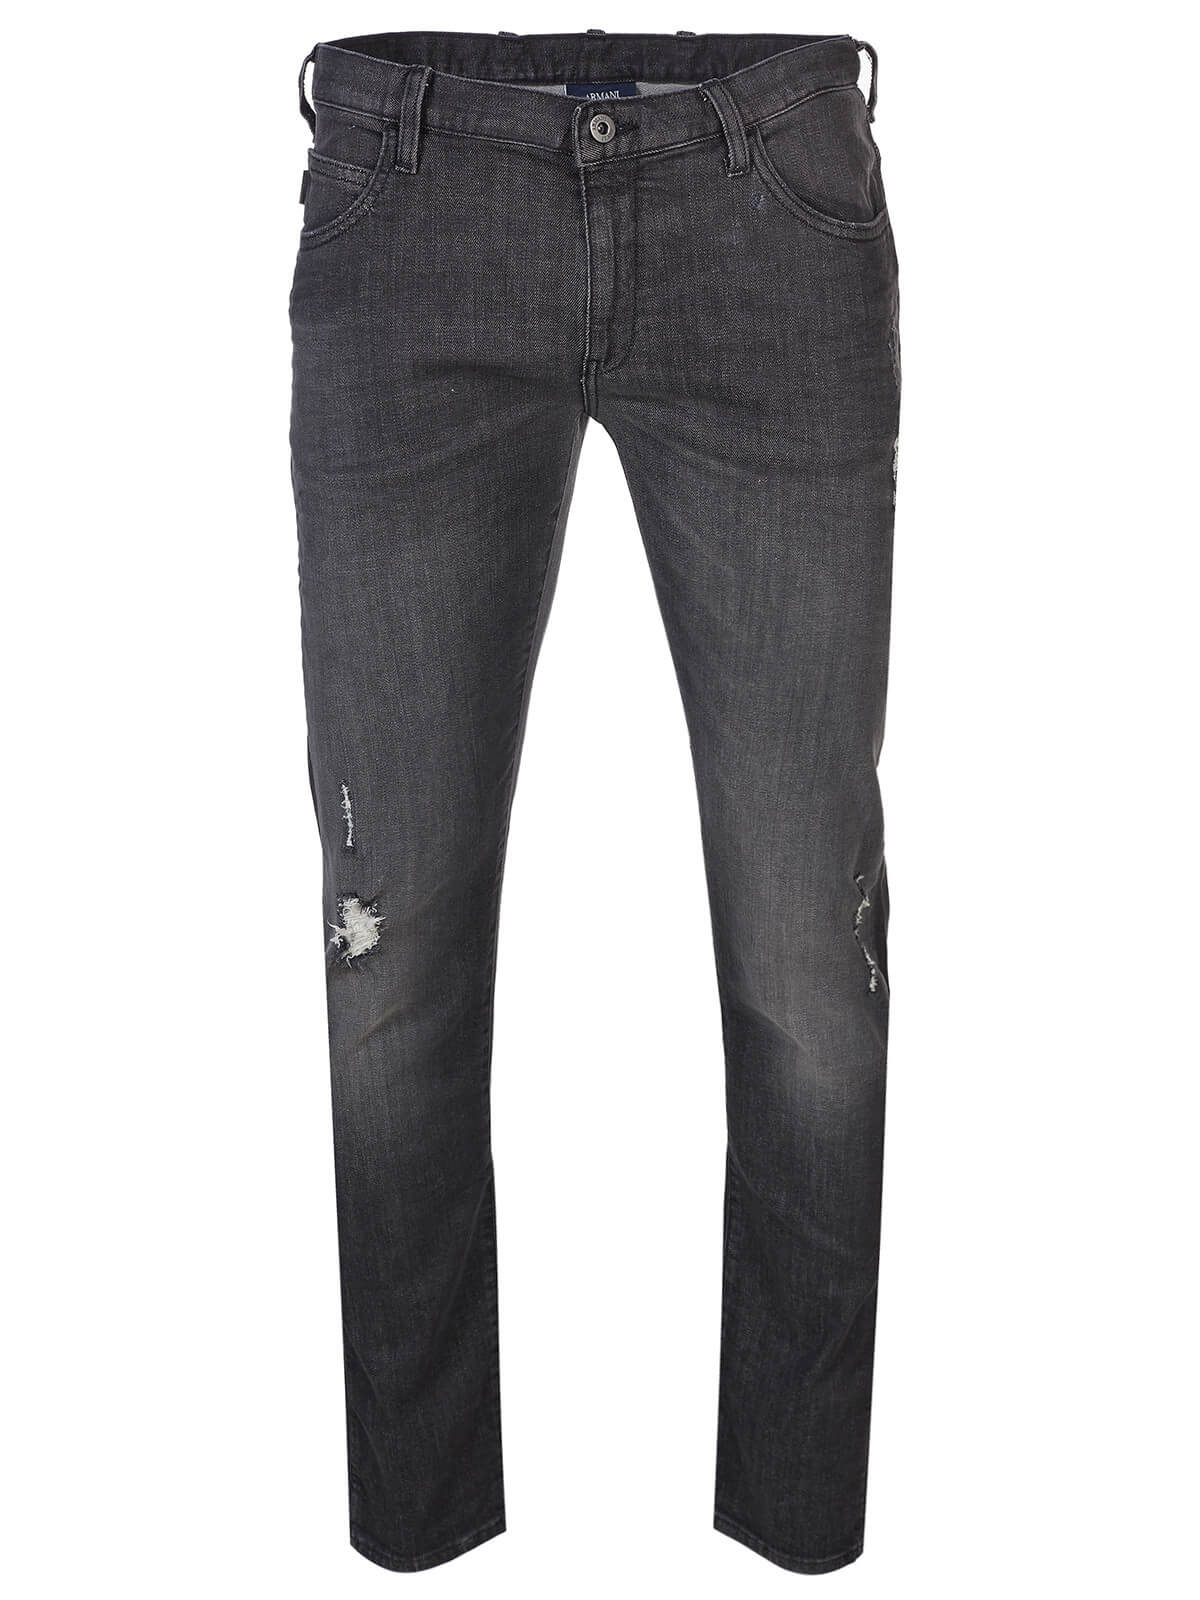 armani jeans online shop